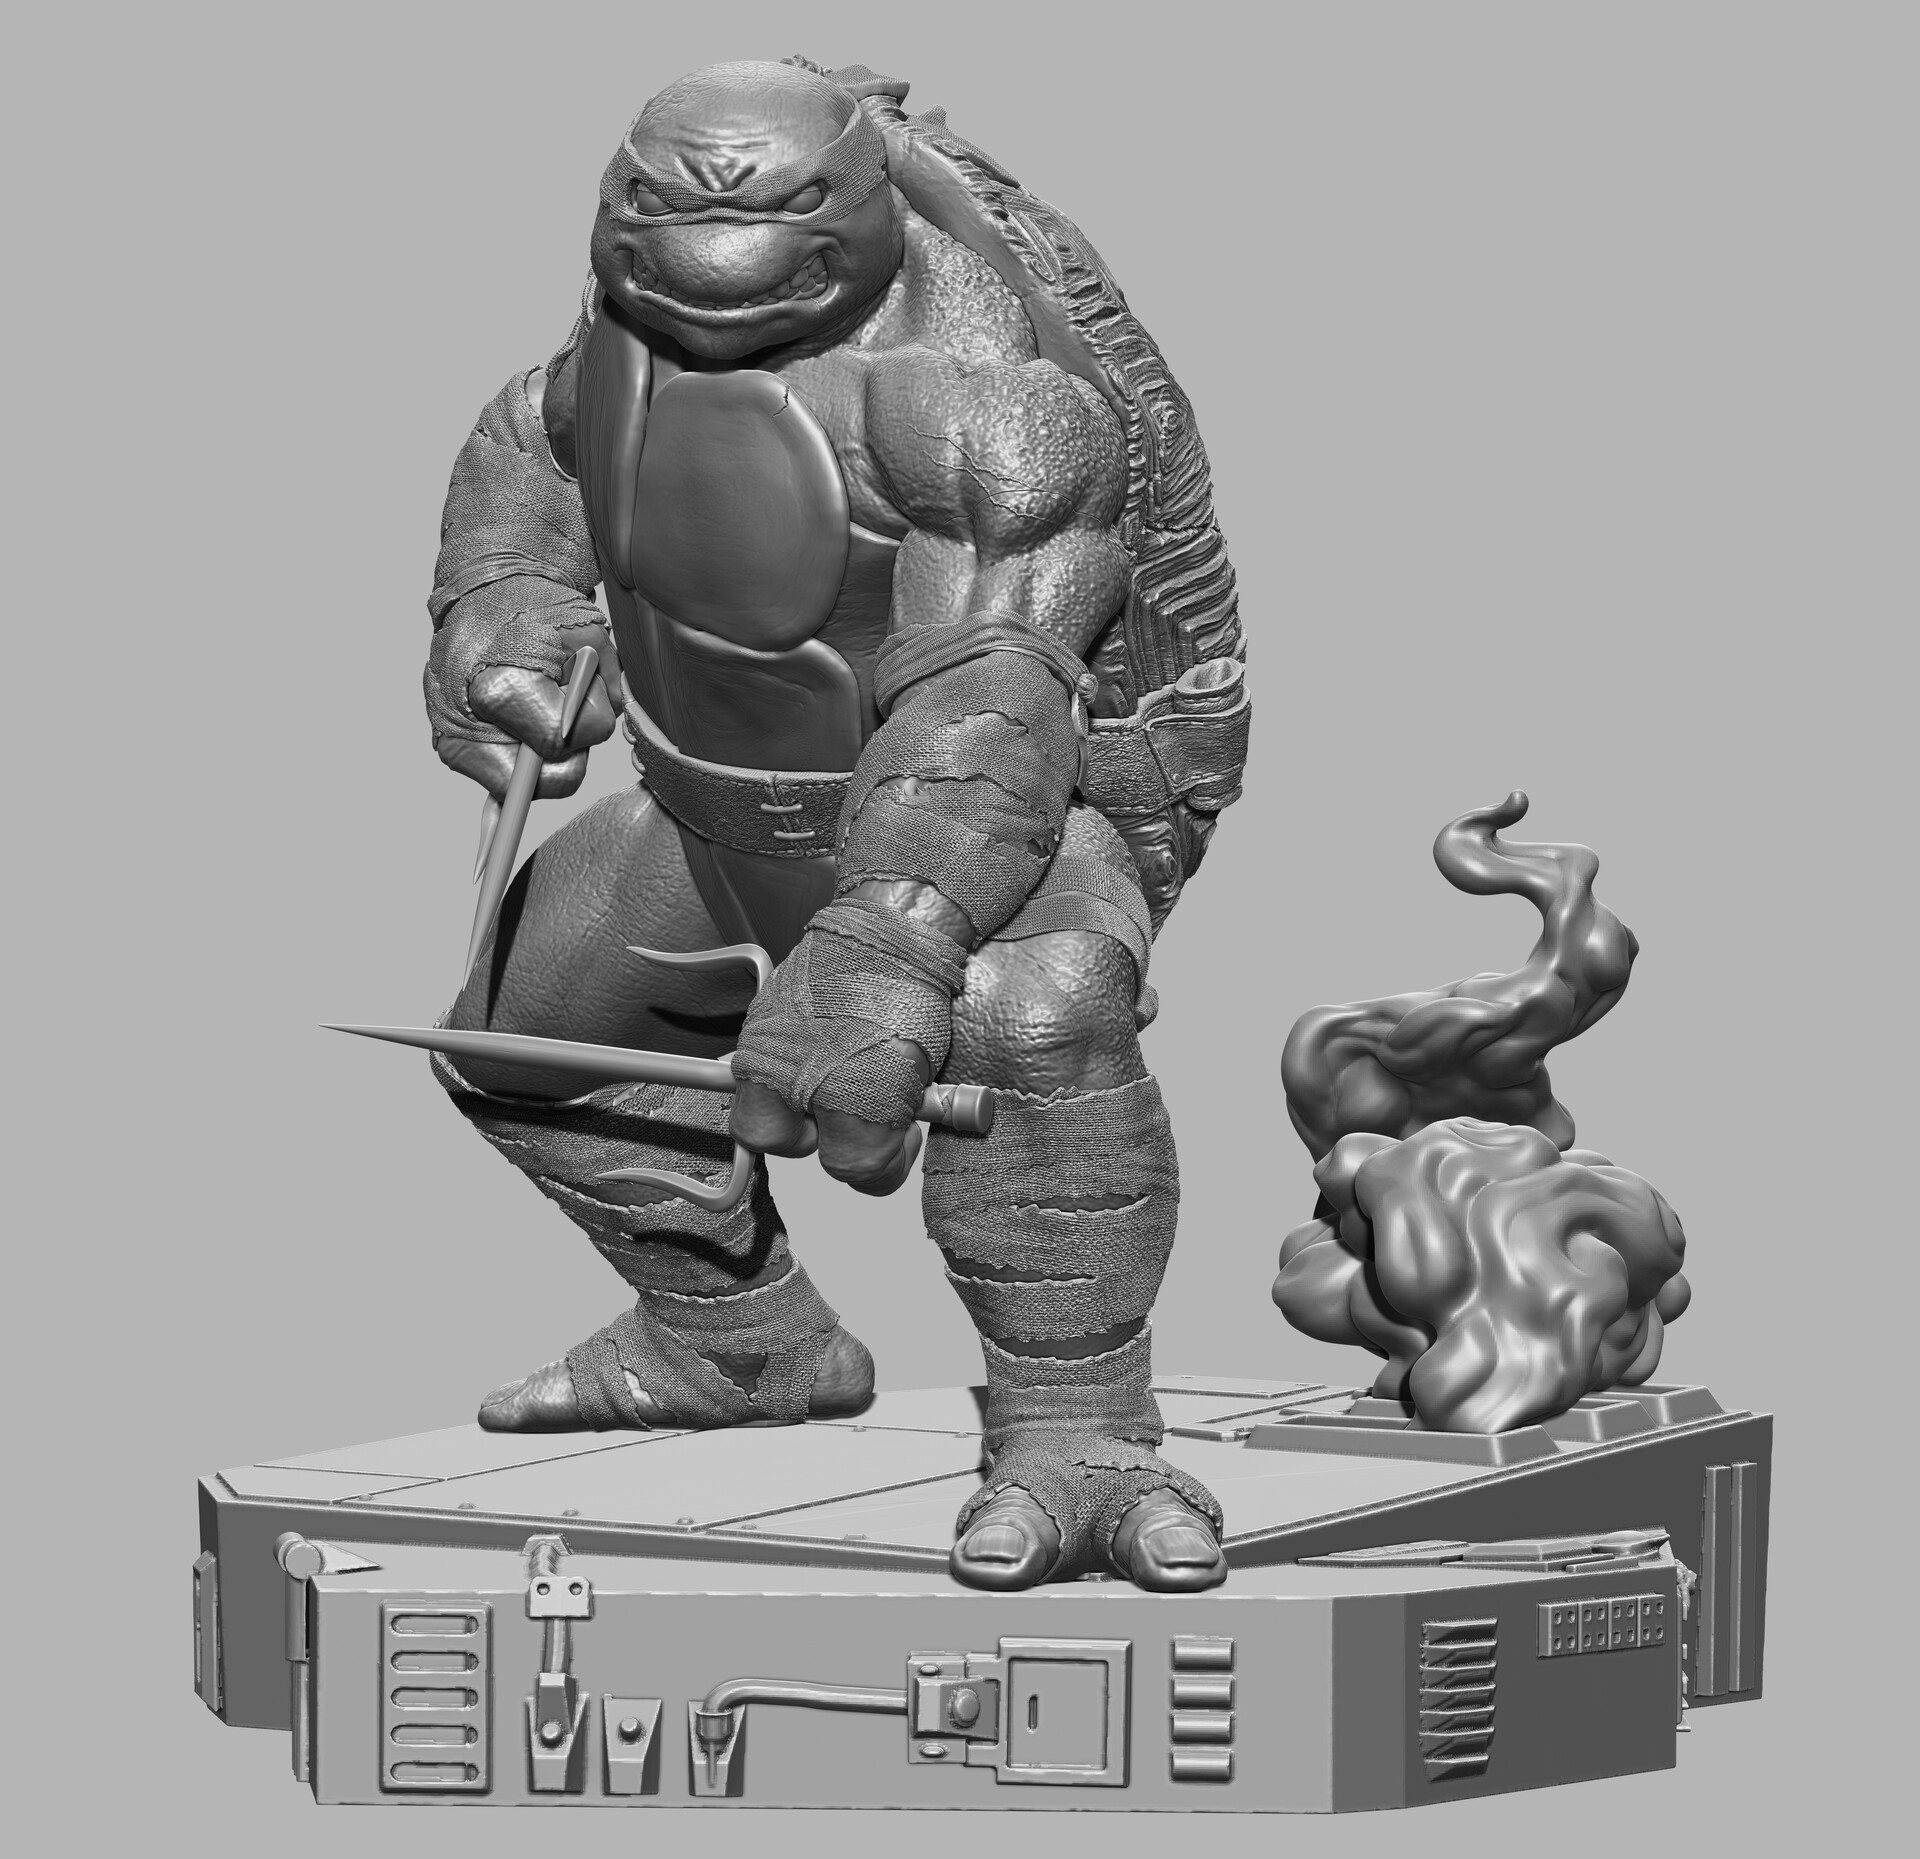 ArtStation - 260 Teenage Mutant Ninja Turtles Concept Reference